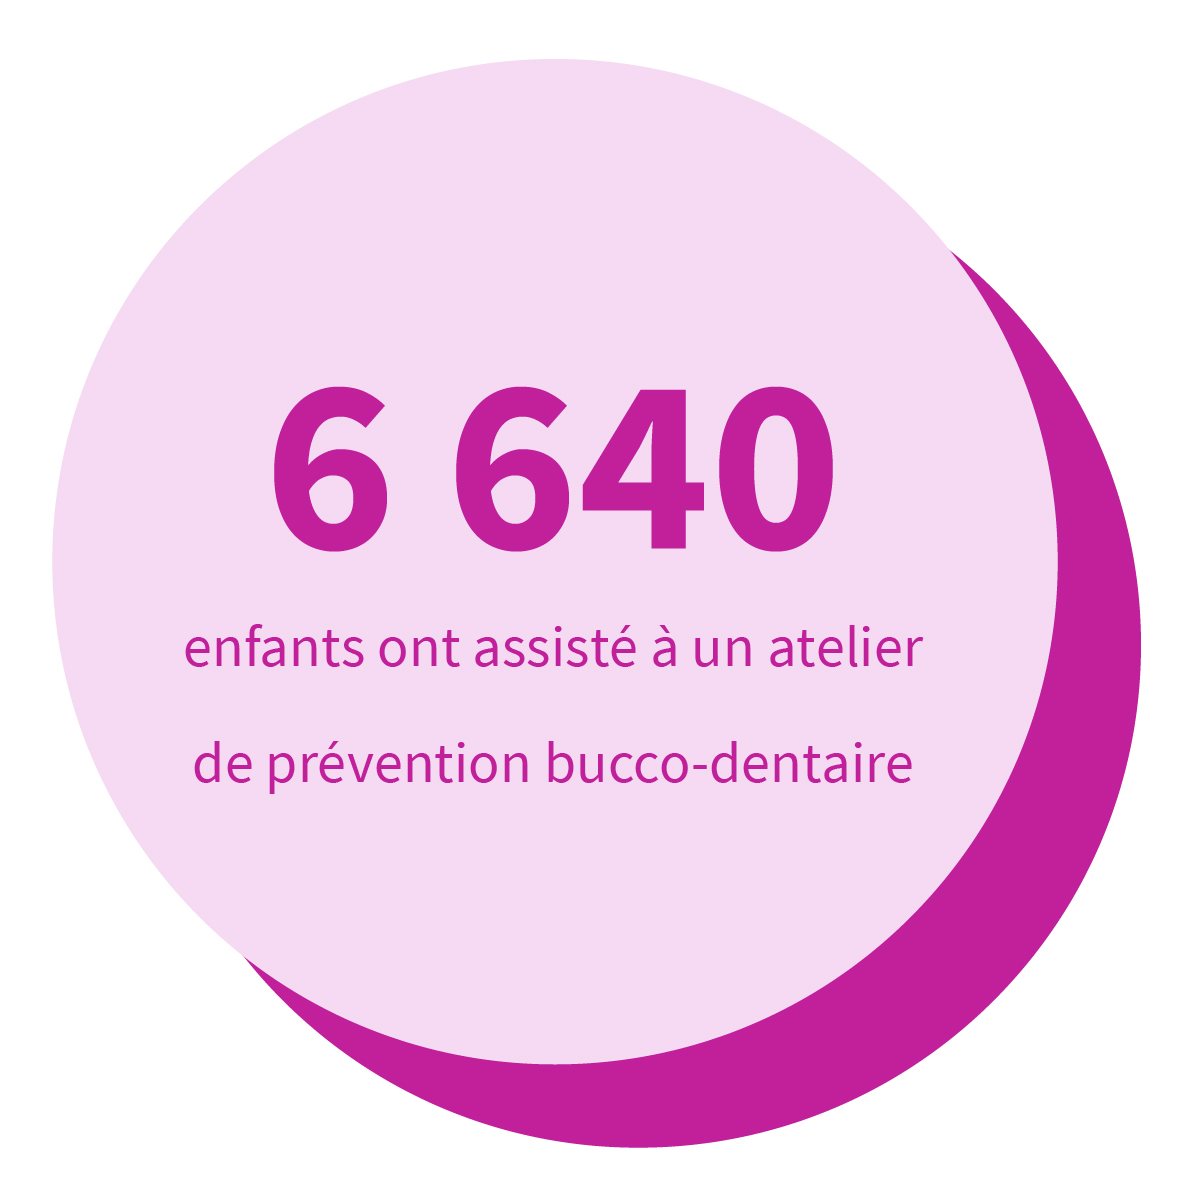 6 640 enfants ont assisté à un atelier de prévention bucco-dentaire.